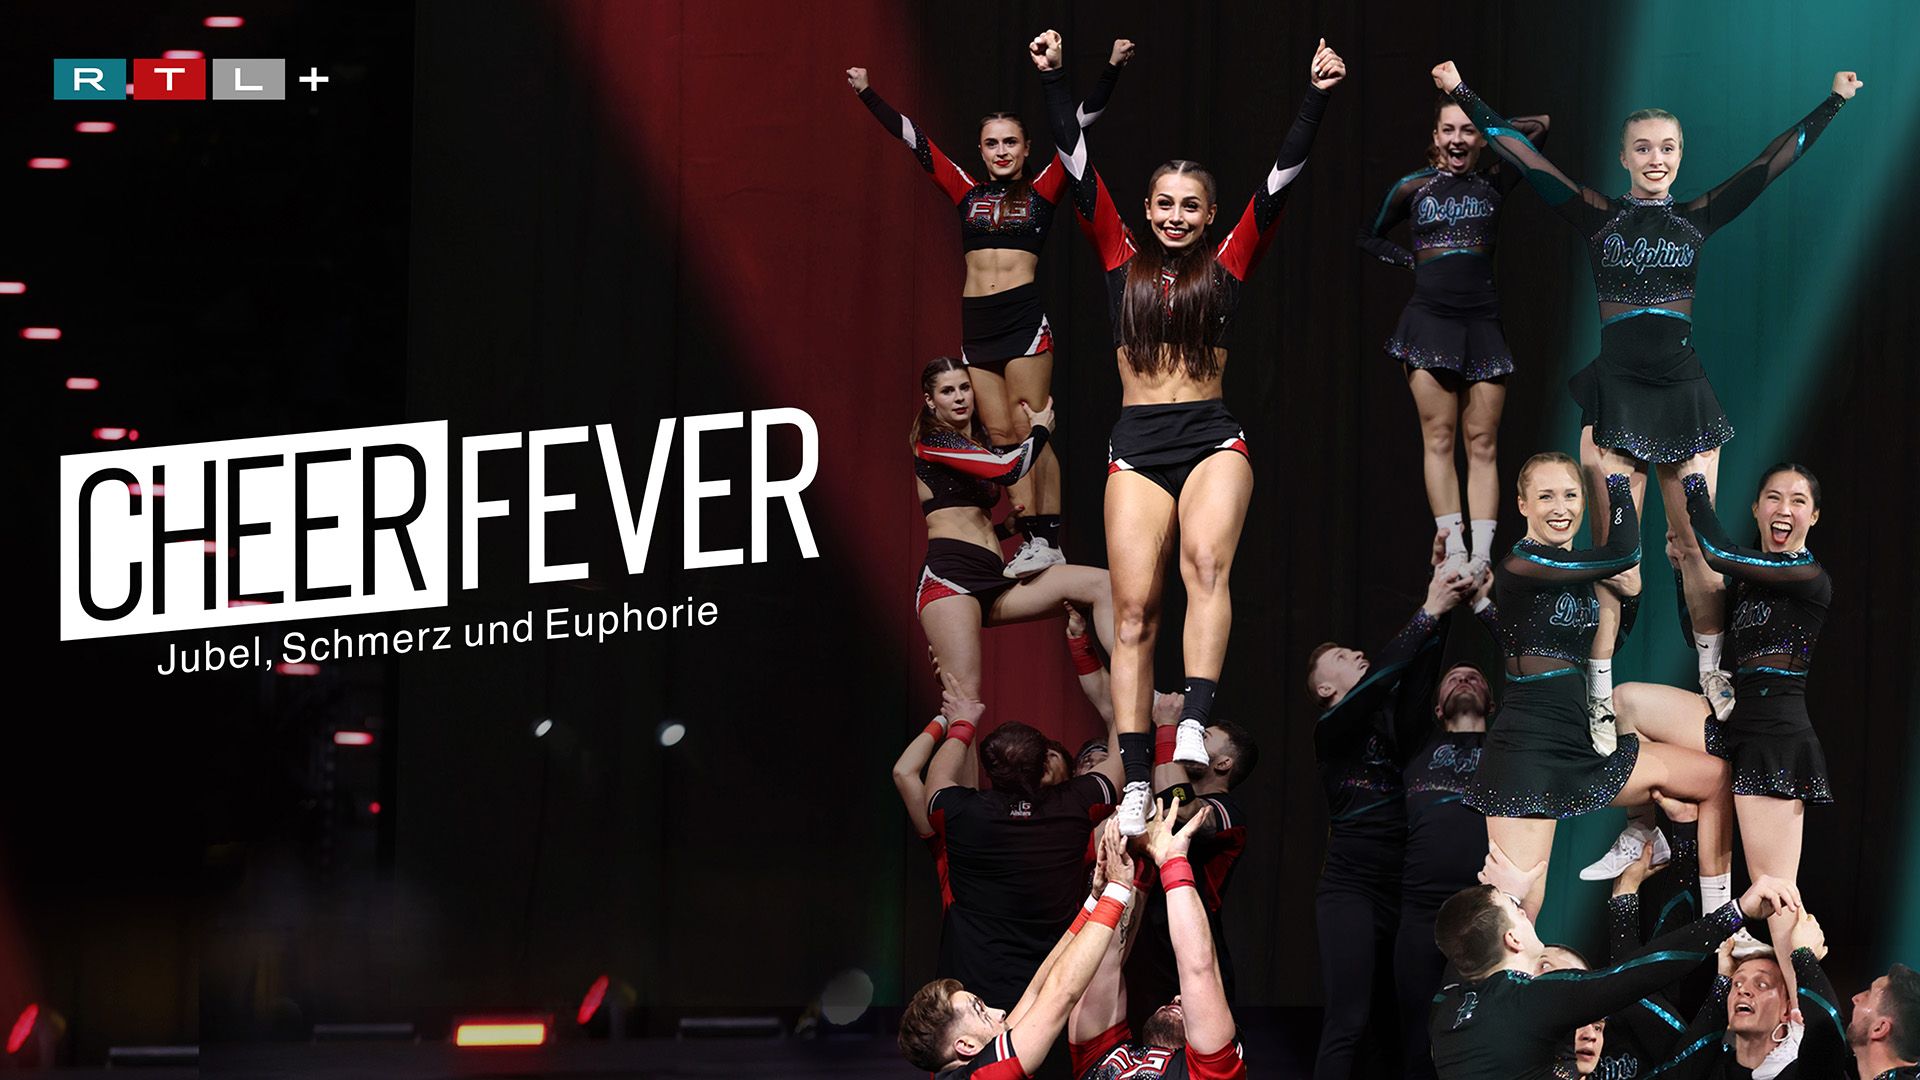 Cheer Fever - Jubel, Schmerz und Euphorie